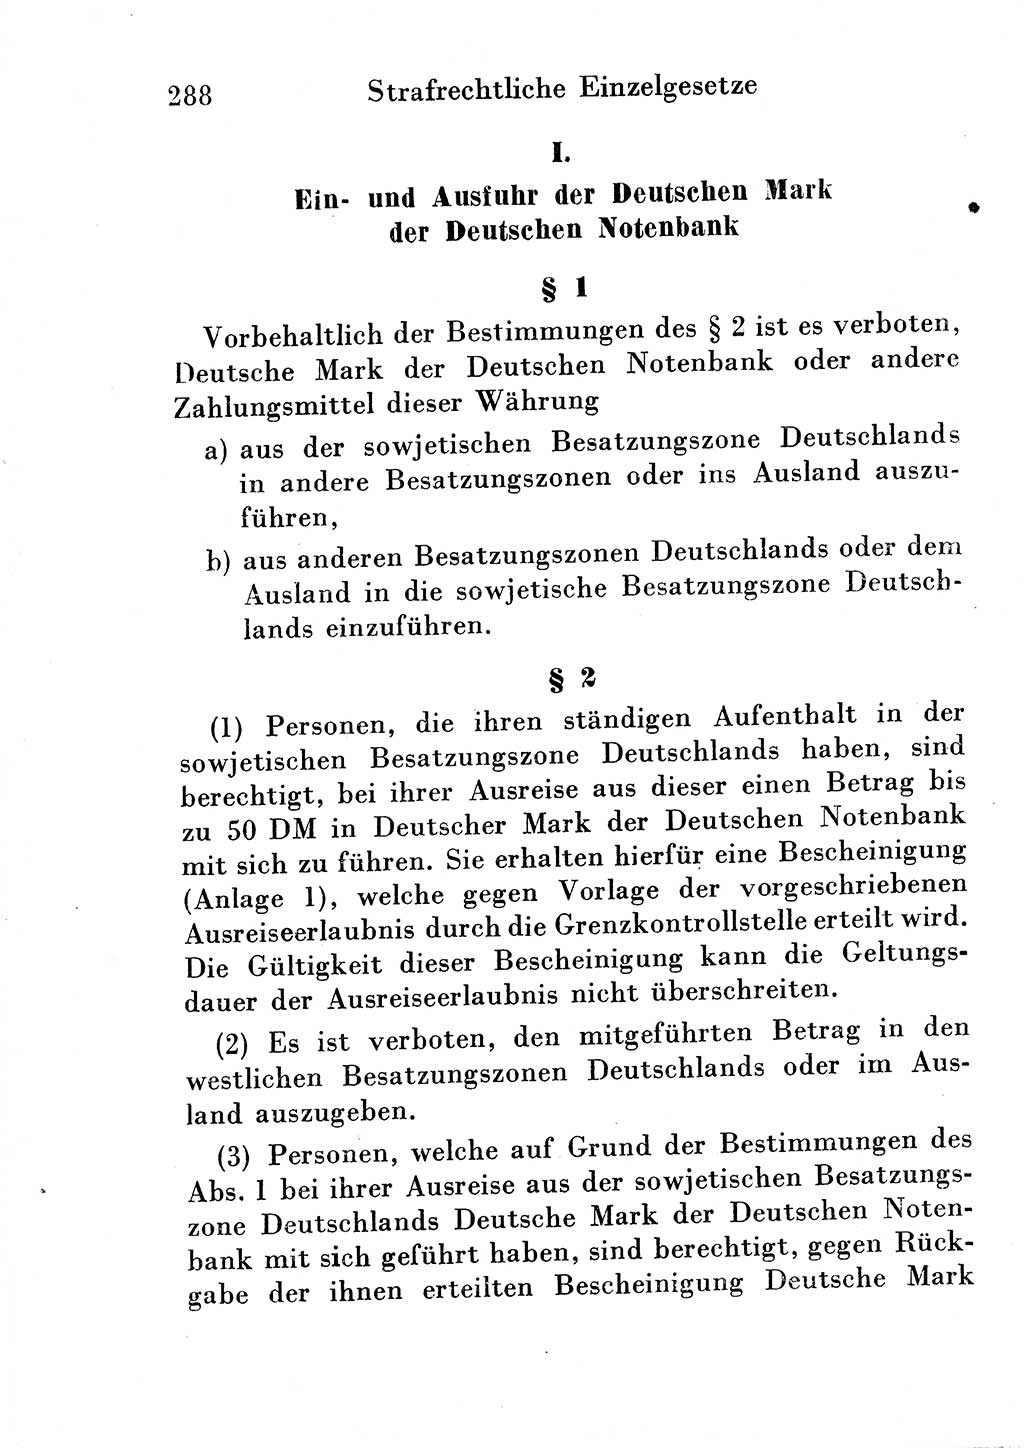 Strafgesetzbuch (StGB) und andere Strafgesetze [Deutsche Demokratische Republik (DDR)] 1954, Seite 288 (StGB Strafges. DDR 1954, S. 288)